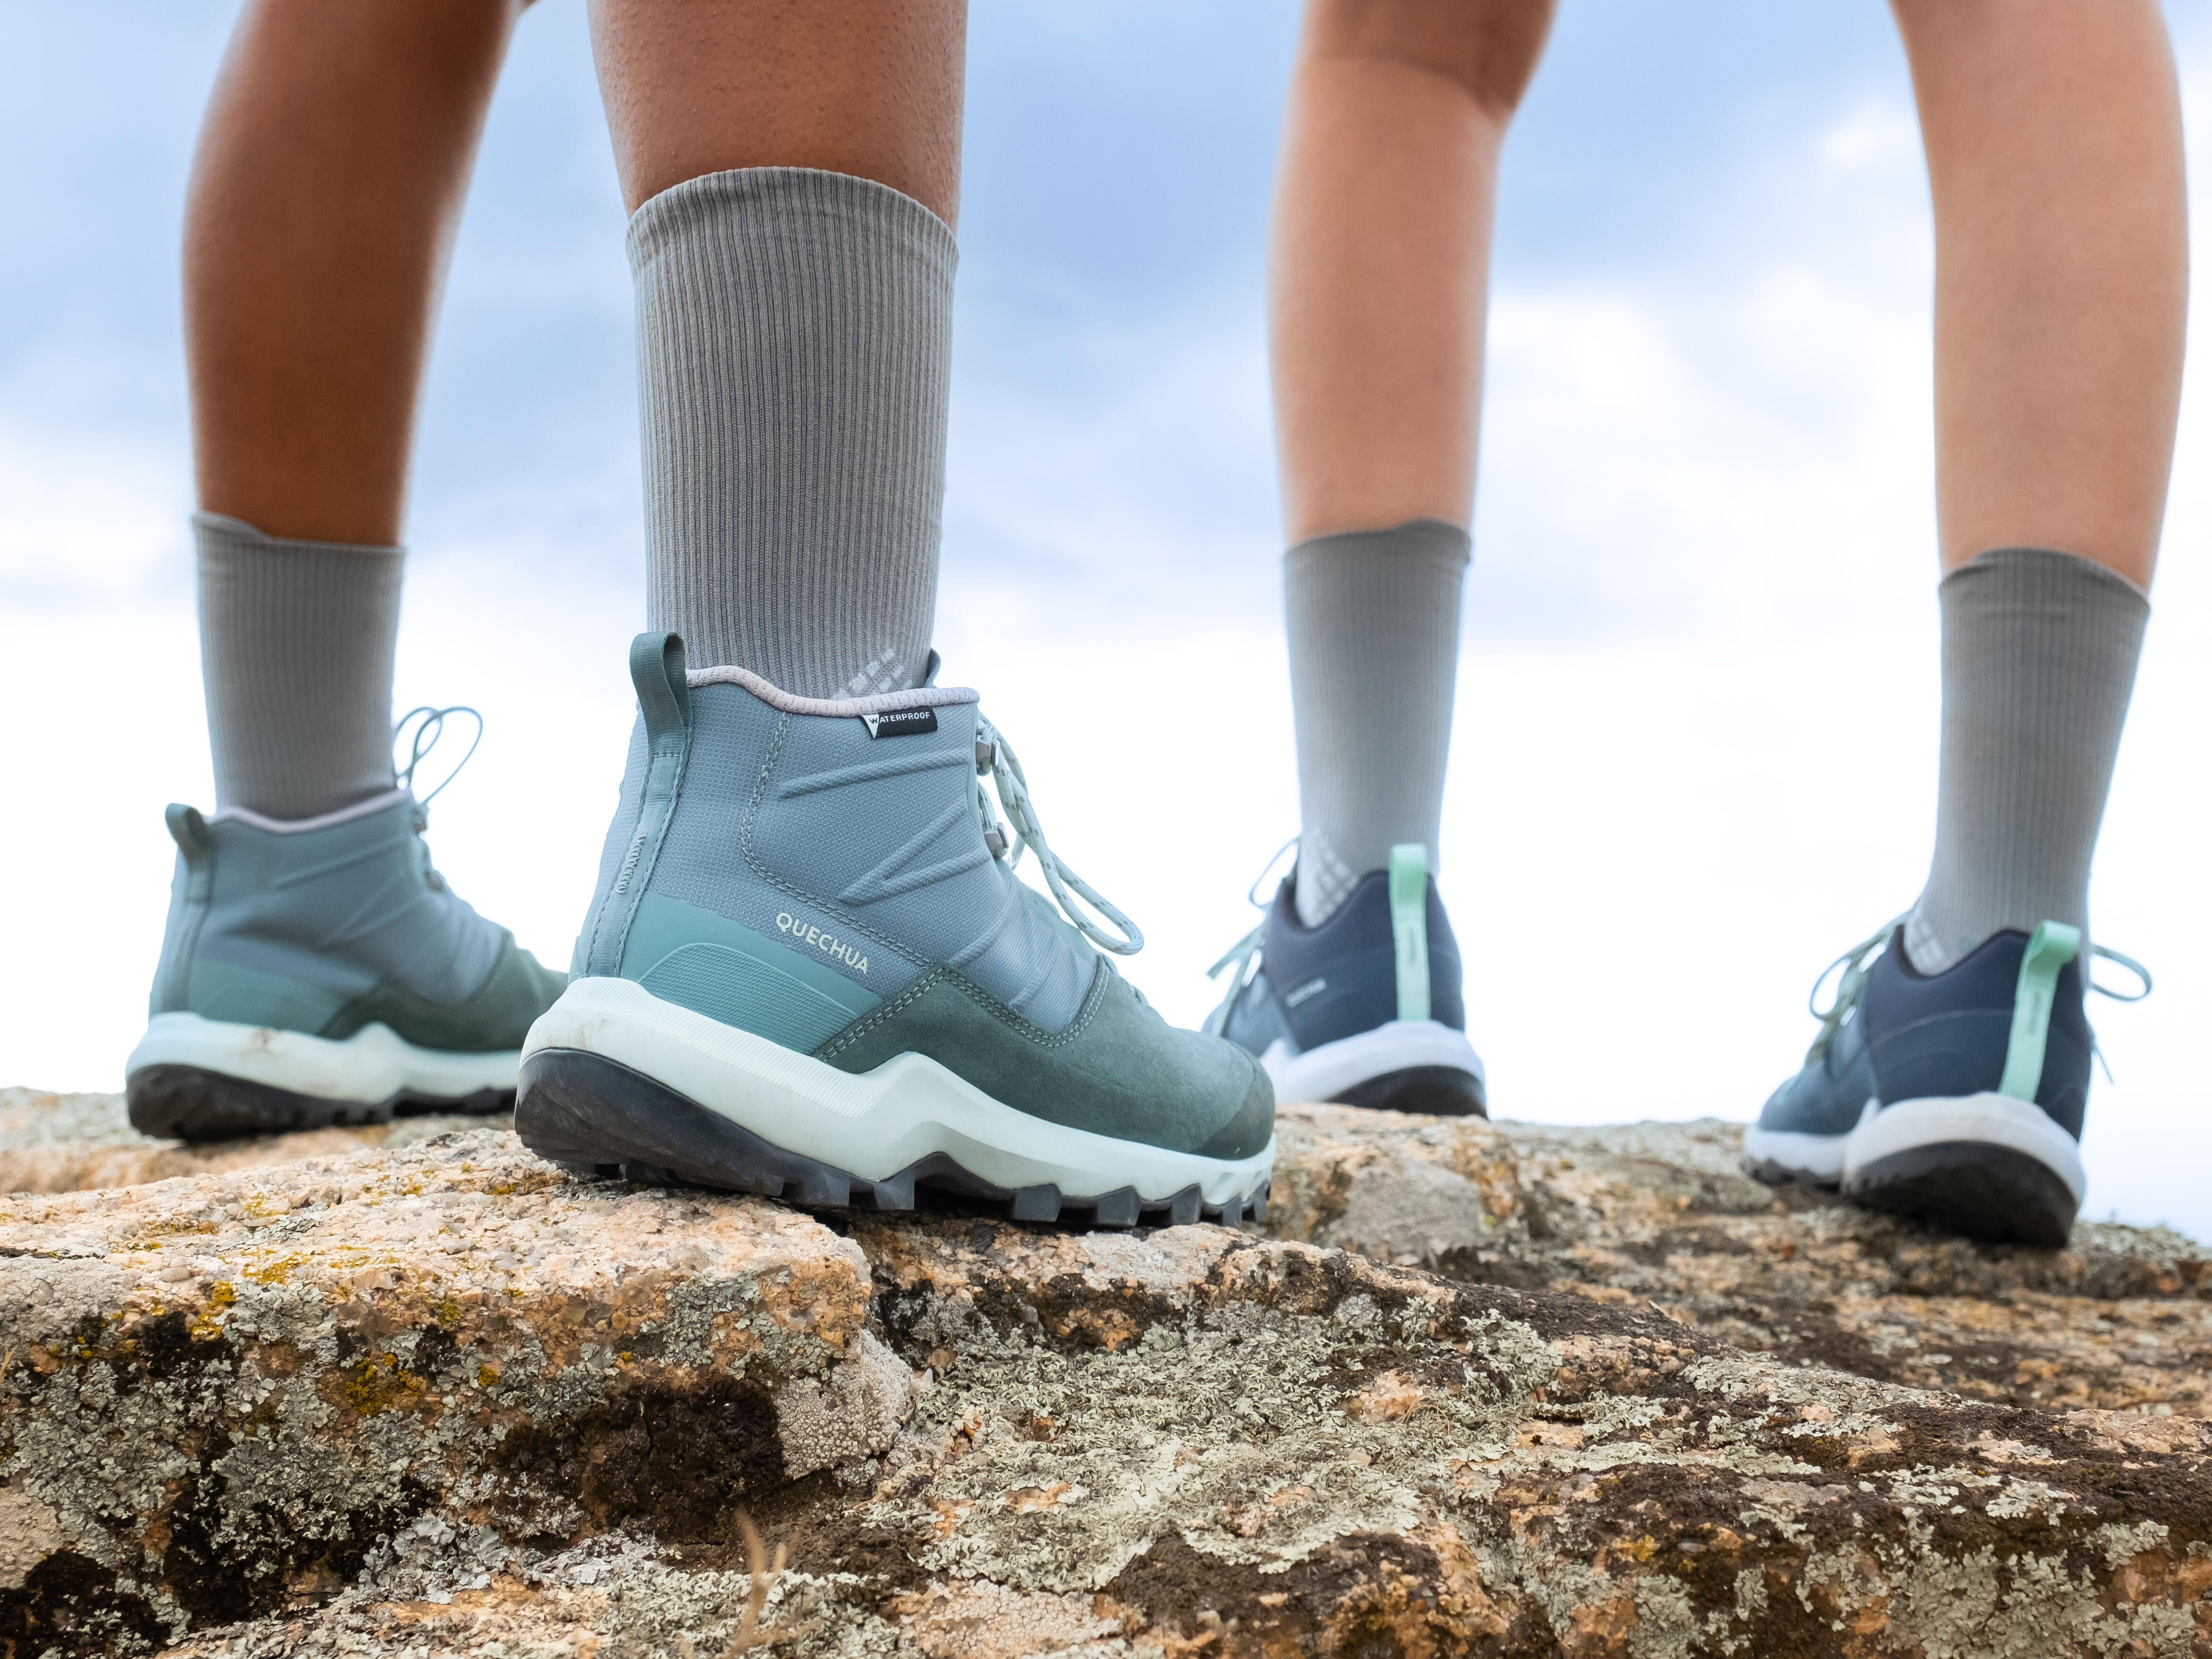 Comment choisir ses chaussures de randonnée ou de trekking ?